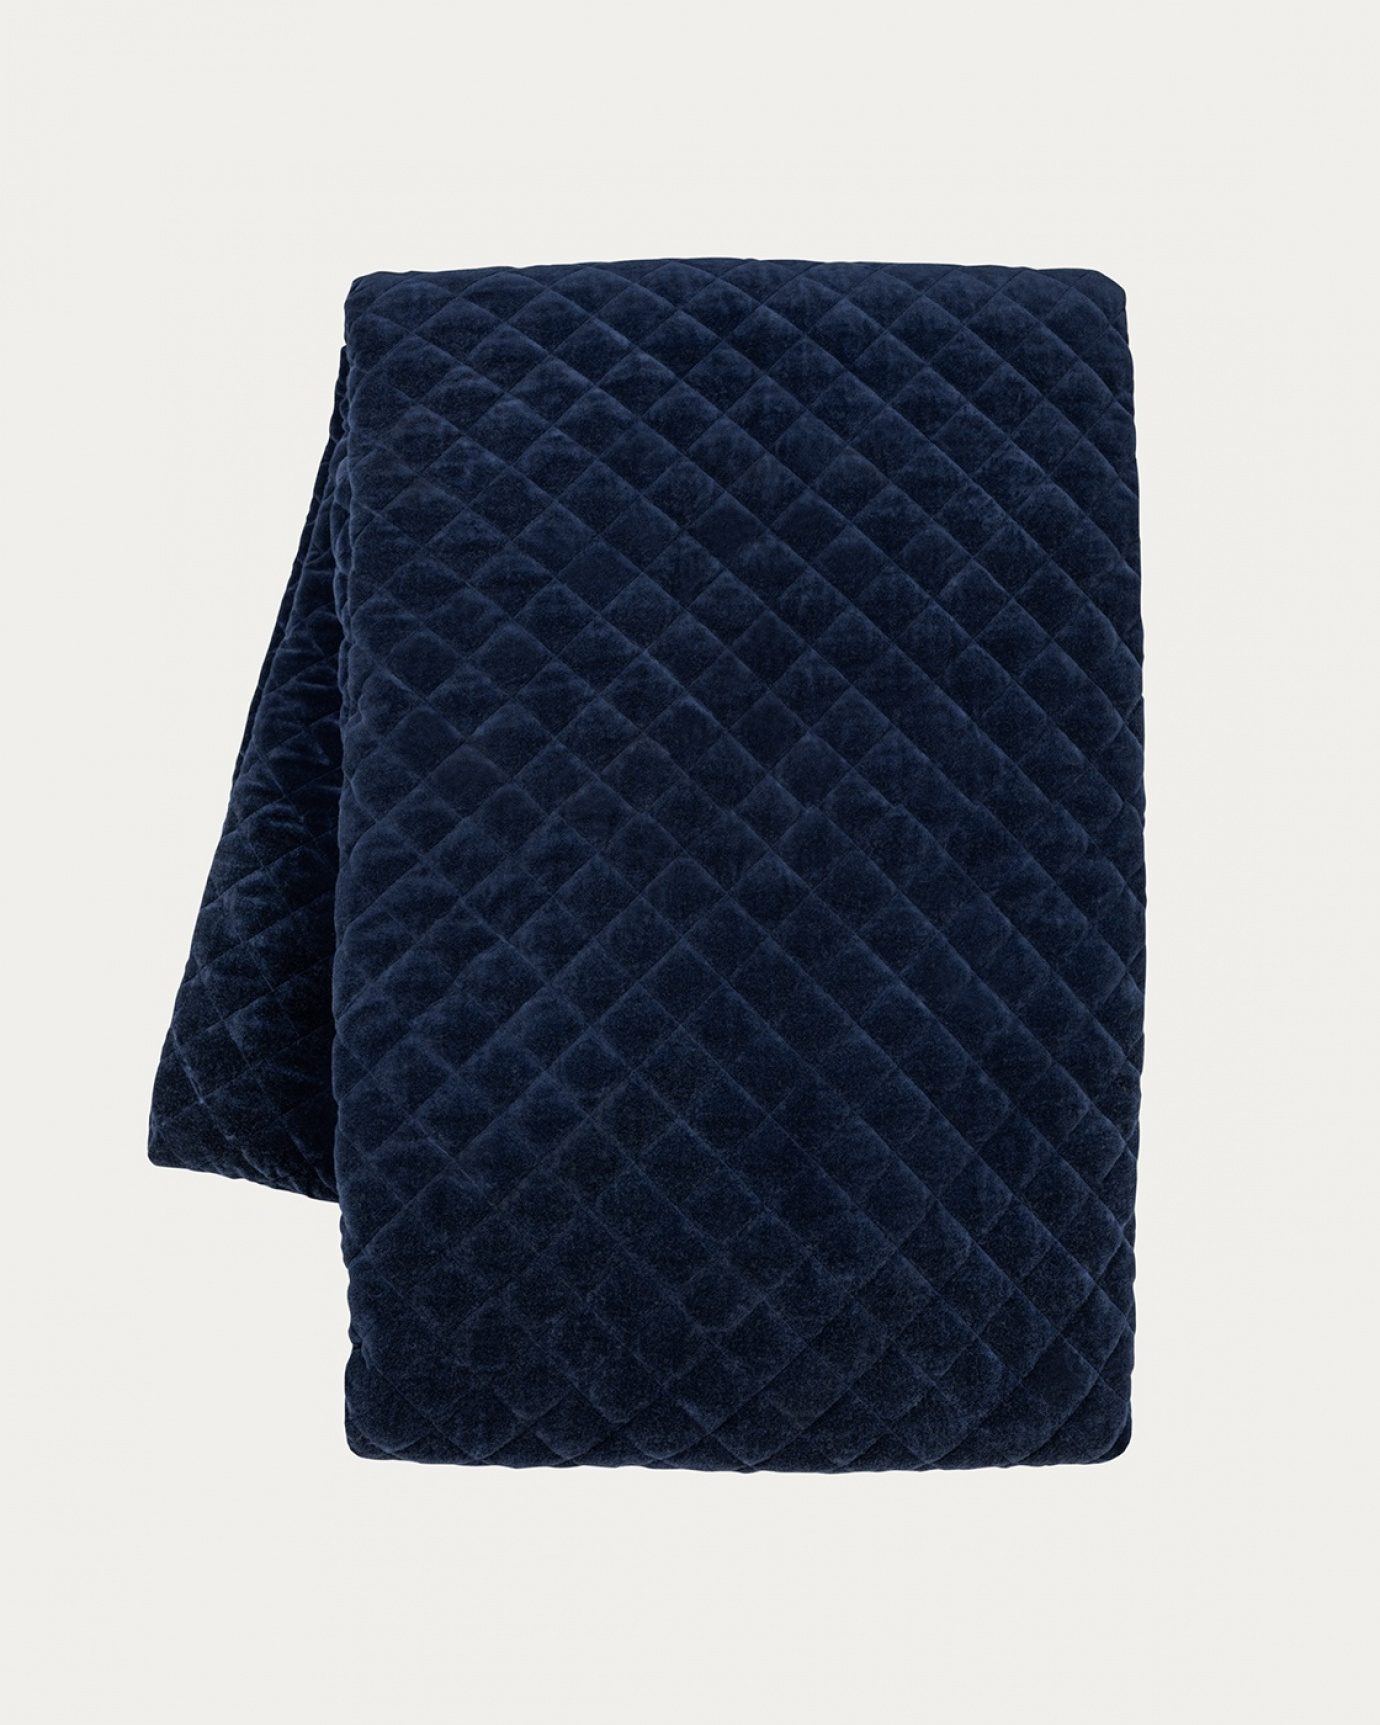 Produktbild tintenblau Tagesdecke PICCOLO aus weichem Baumwollsamt für Einzelbett von LINUM DESIGN. Größe 170x260 cm.